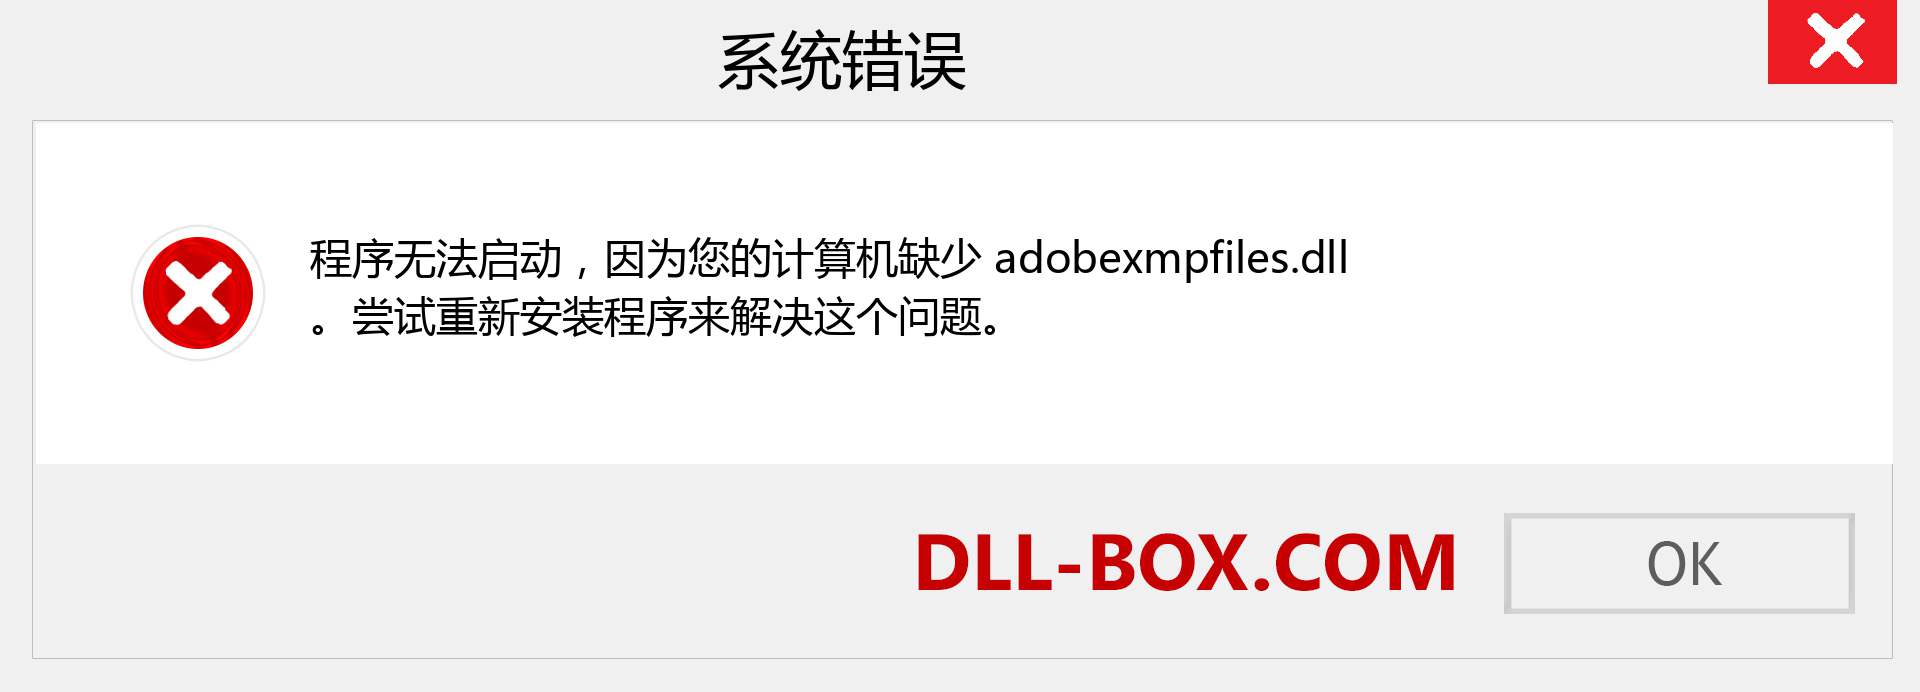 adobexmpfiles.dll 文件丢失？。 适用于 Windows 7、8、10 的下载 - 修复 Windows、照片、图像上的 adobexmpfiles dll 丢失错误